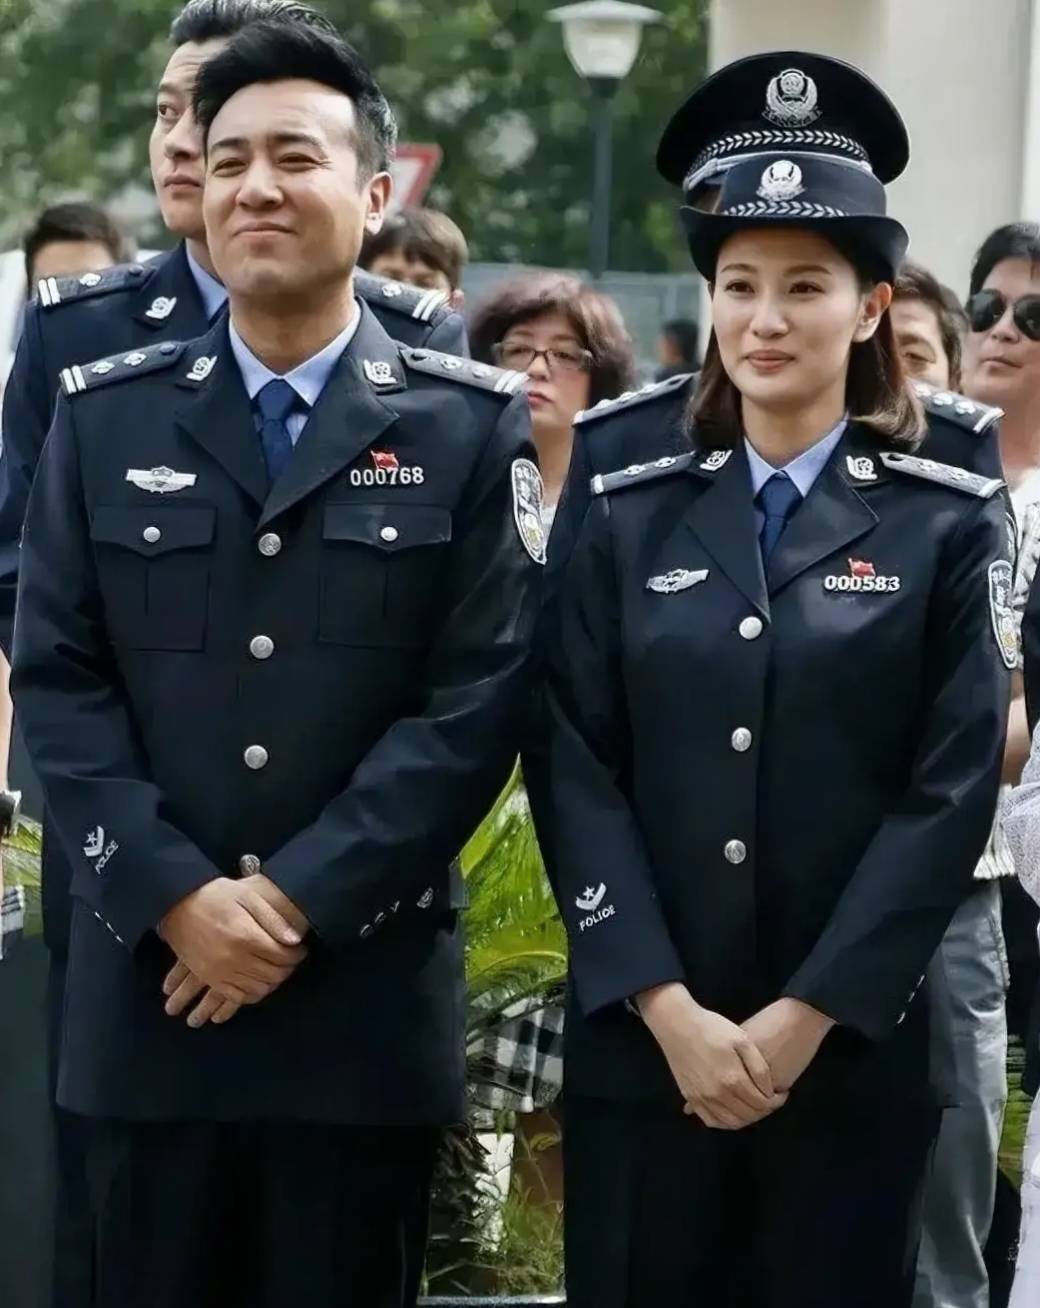 第1次见刘皇叔穿警服,也太有魅力了